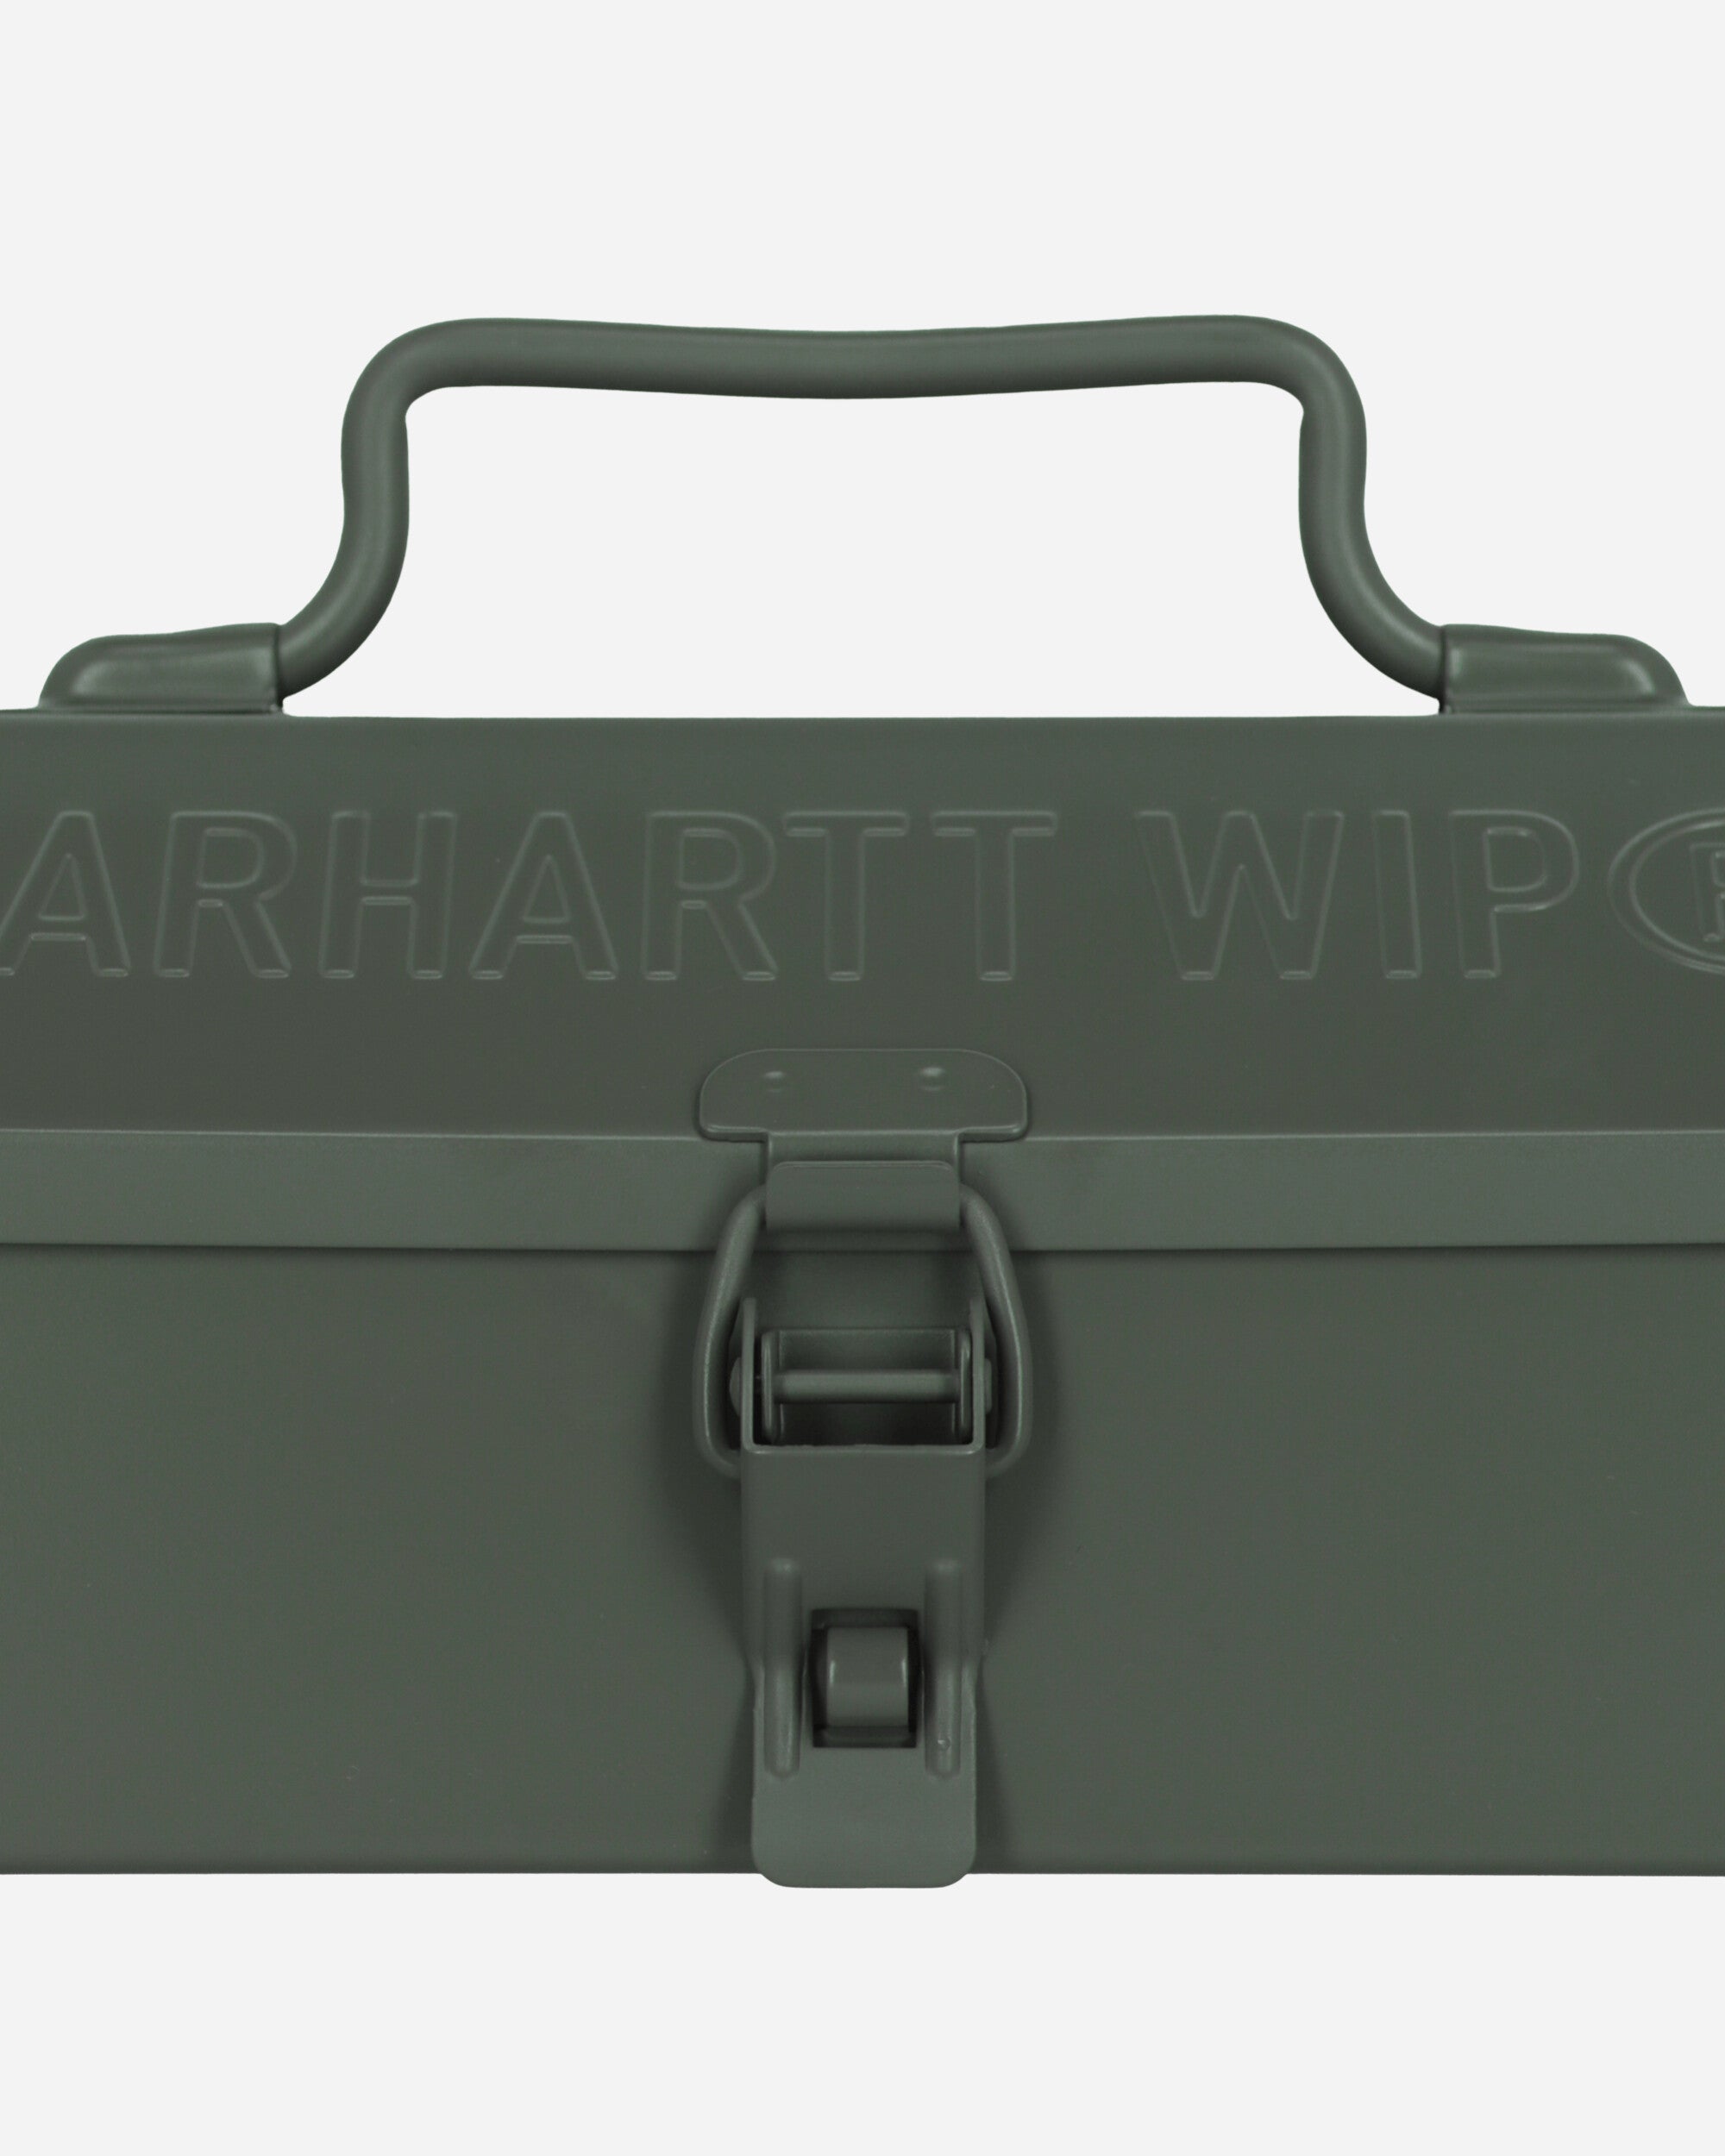 Carhartt WIP Tour Tool Box Smoke Green Equipment Camping Gear I033321 1NDXX